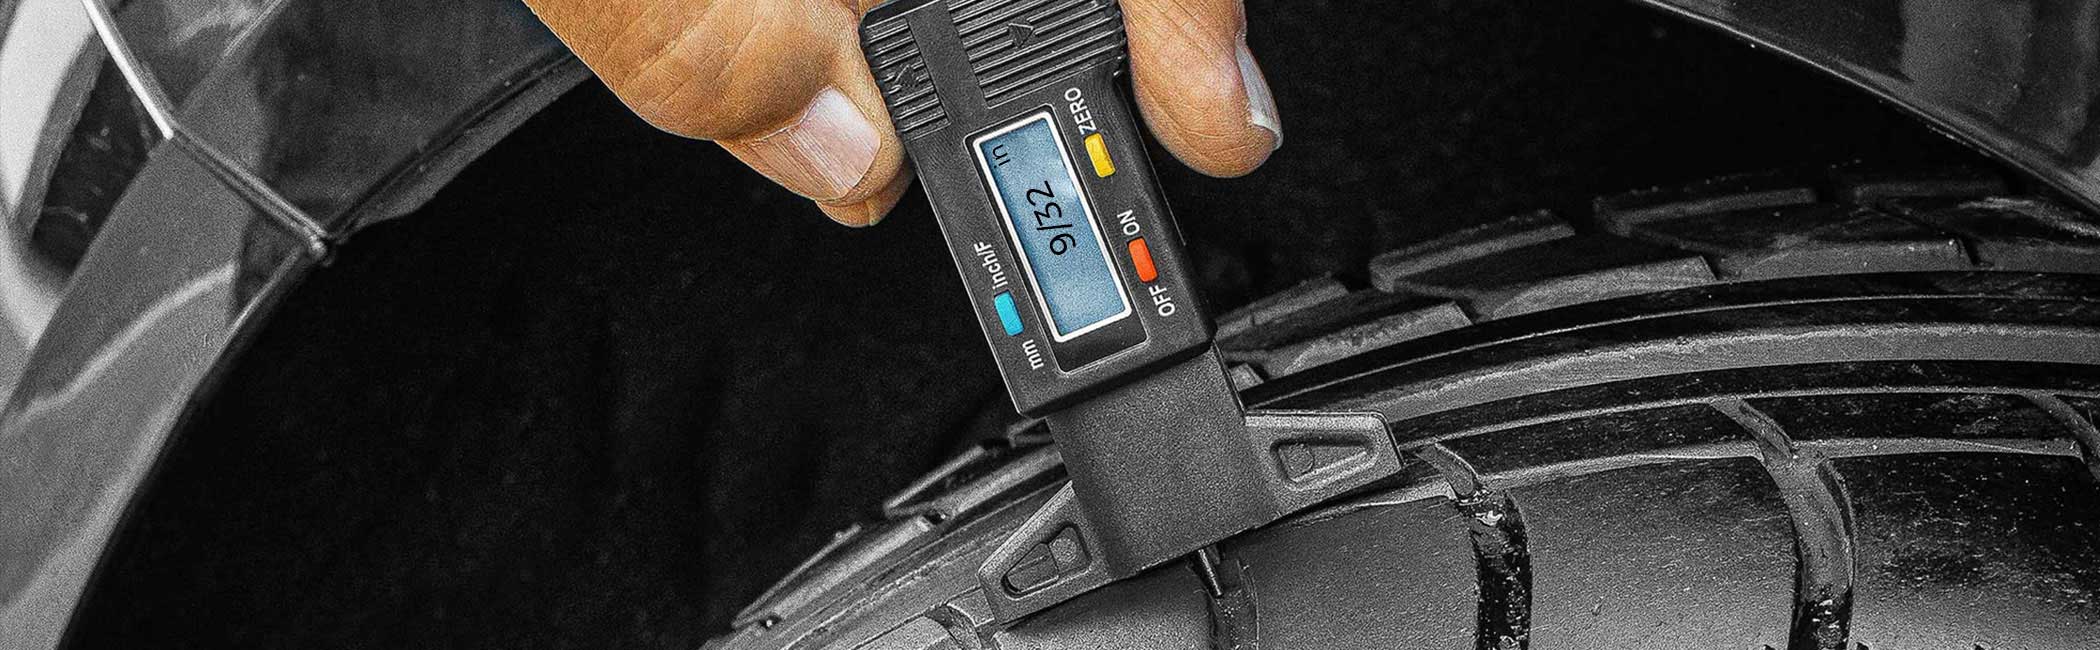 RUIZHI 4 Piezas Medidor de Profundidad de la Banda de Rodadura 0-20mm Medidor de Profundidad Tyre Tread Depth Gauge para Motocicleta Vehículo Coche